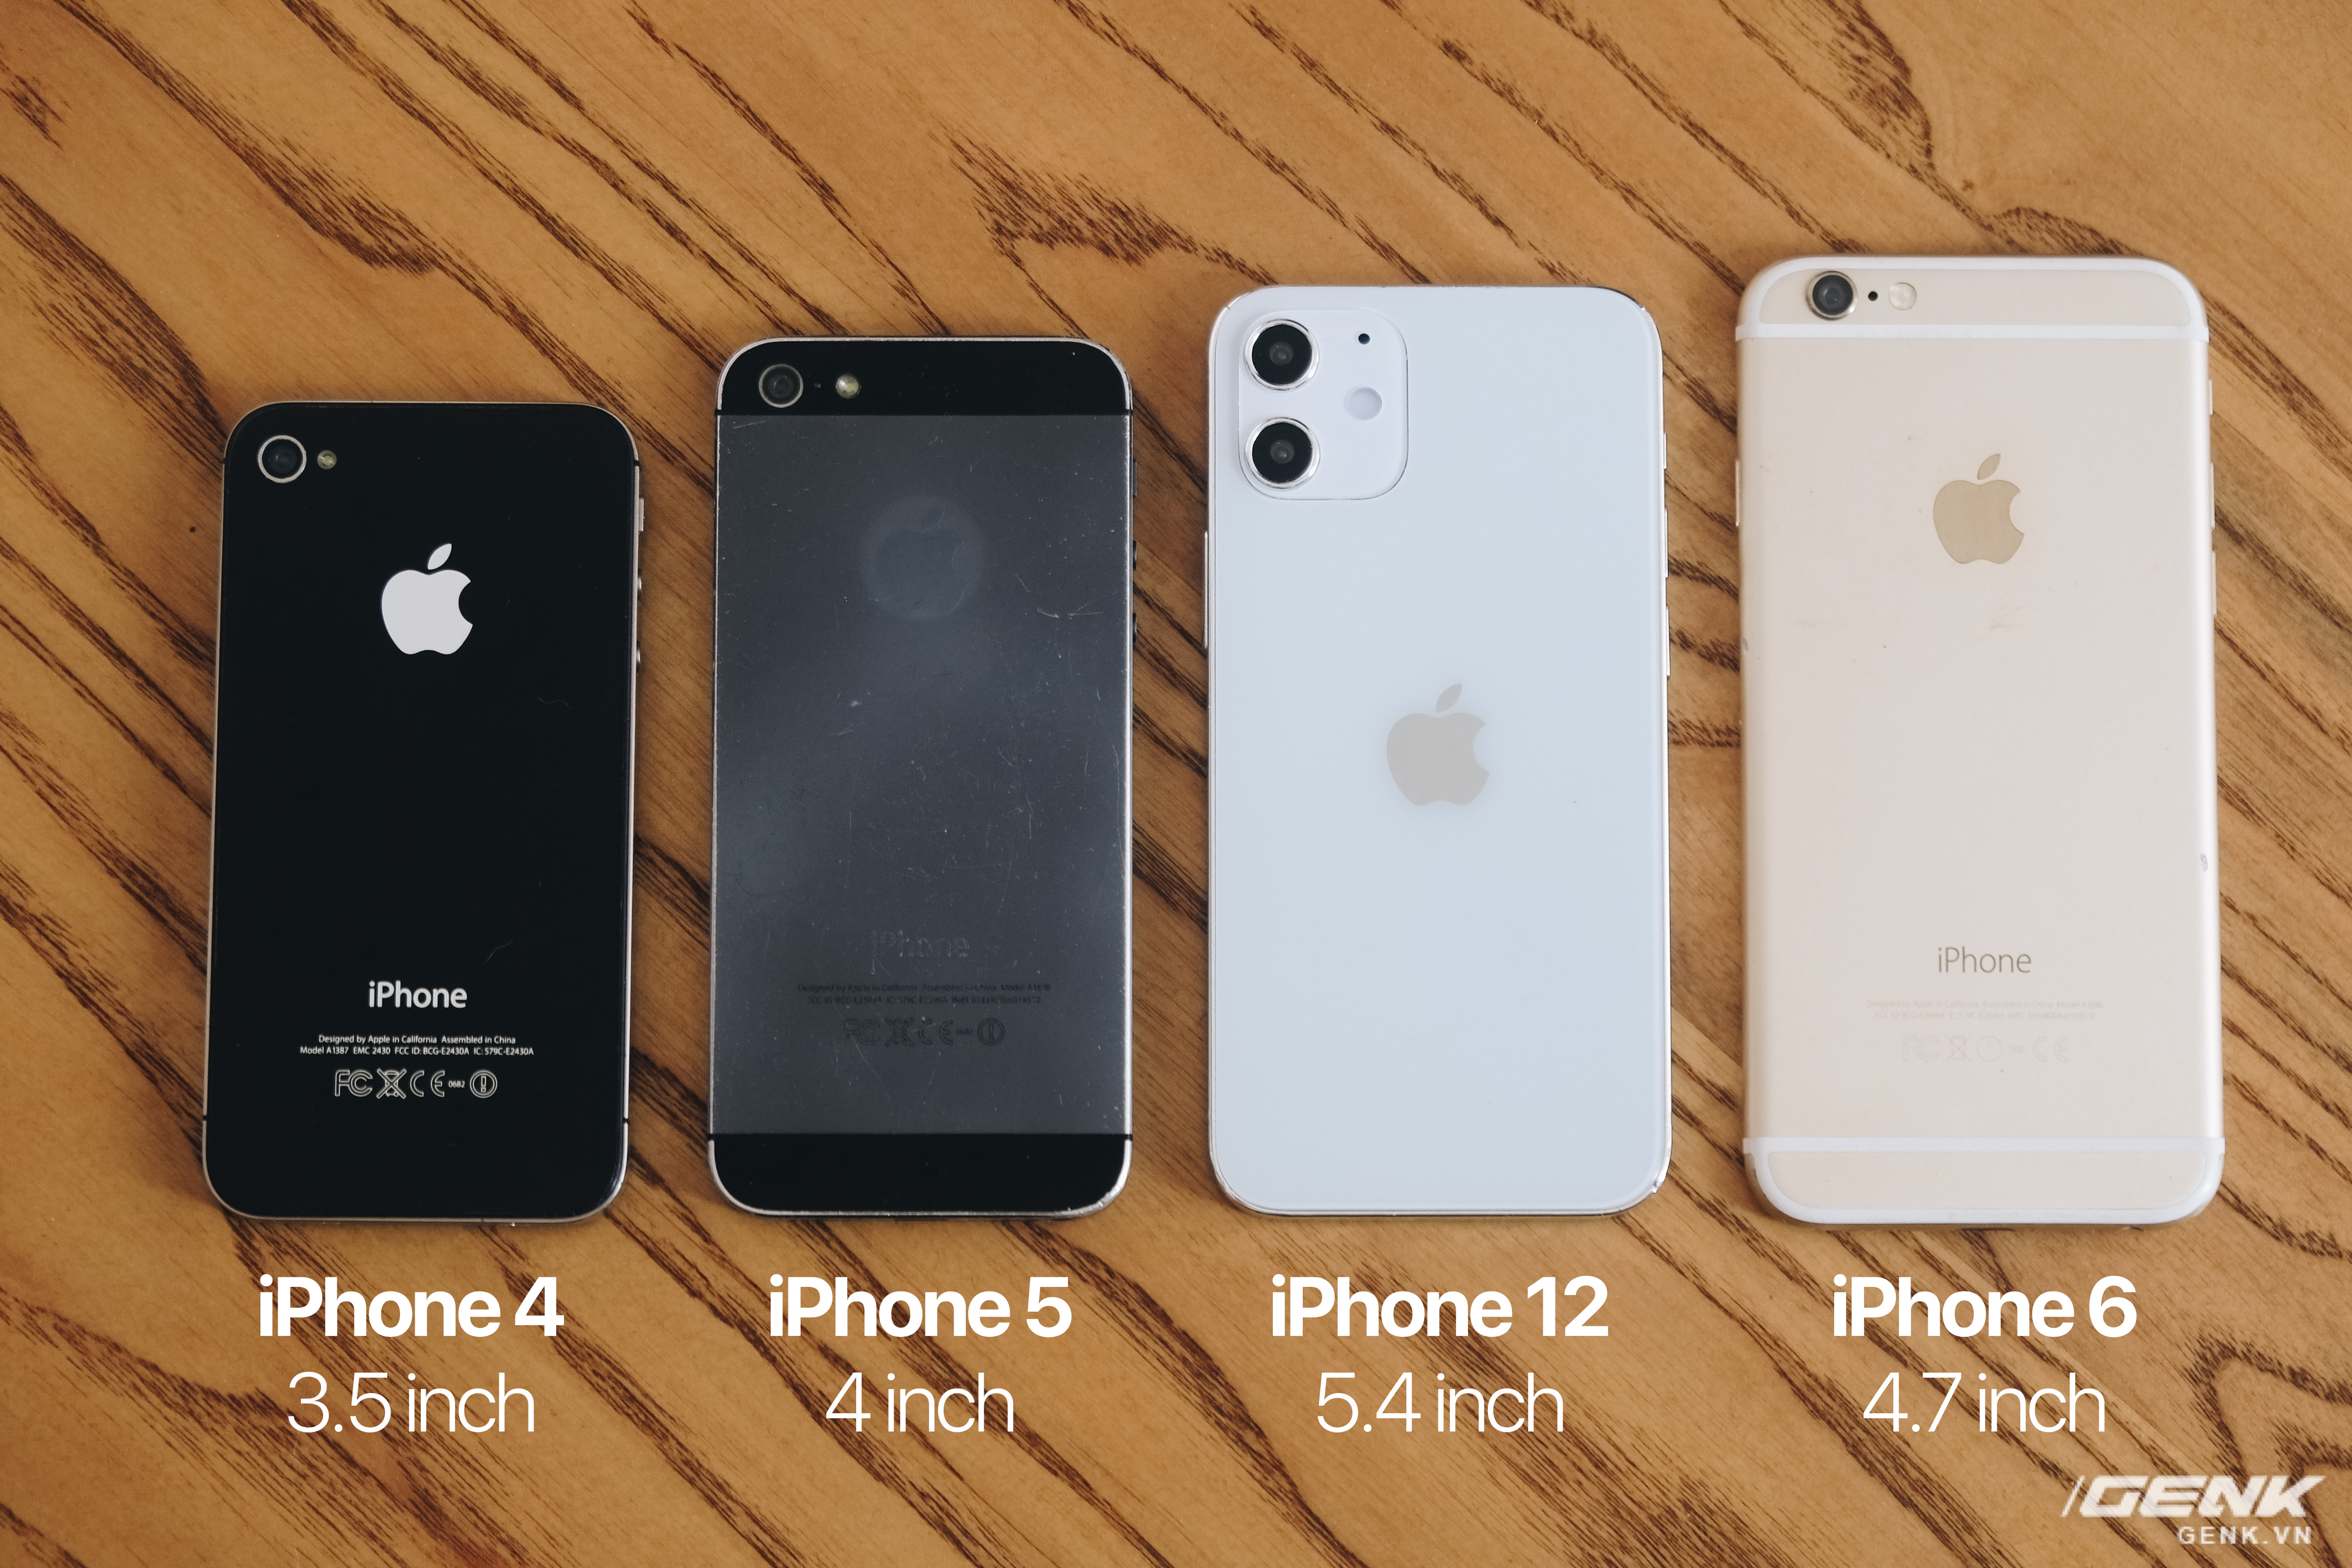 iPhone 12: Với hiệu năng vượt trội và thiết kế cực kỳ đẹp mắt, iPhone 12 hứa hẹn sẽ là chiếc điện thoại đáng mua nhất trong năm nay. Hãy xem hình ảnh liên quan để thấy rõ sự khác biệt và sự hoàn hảo của sản phẩm này.